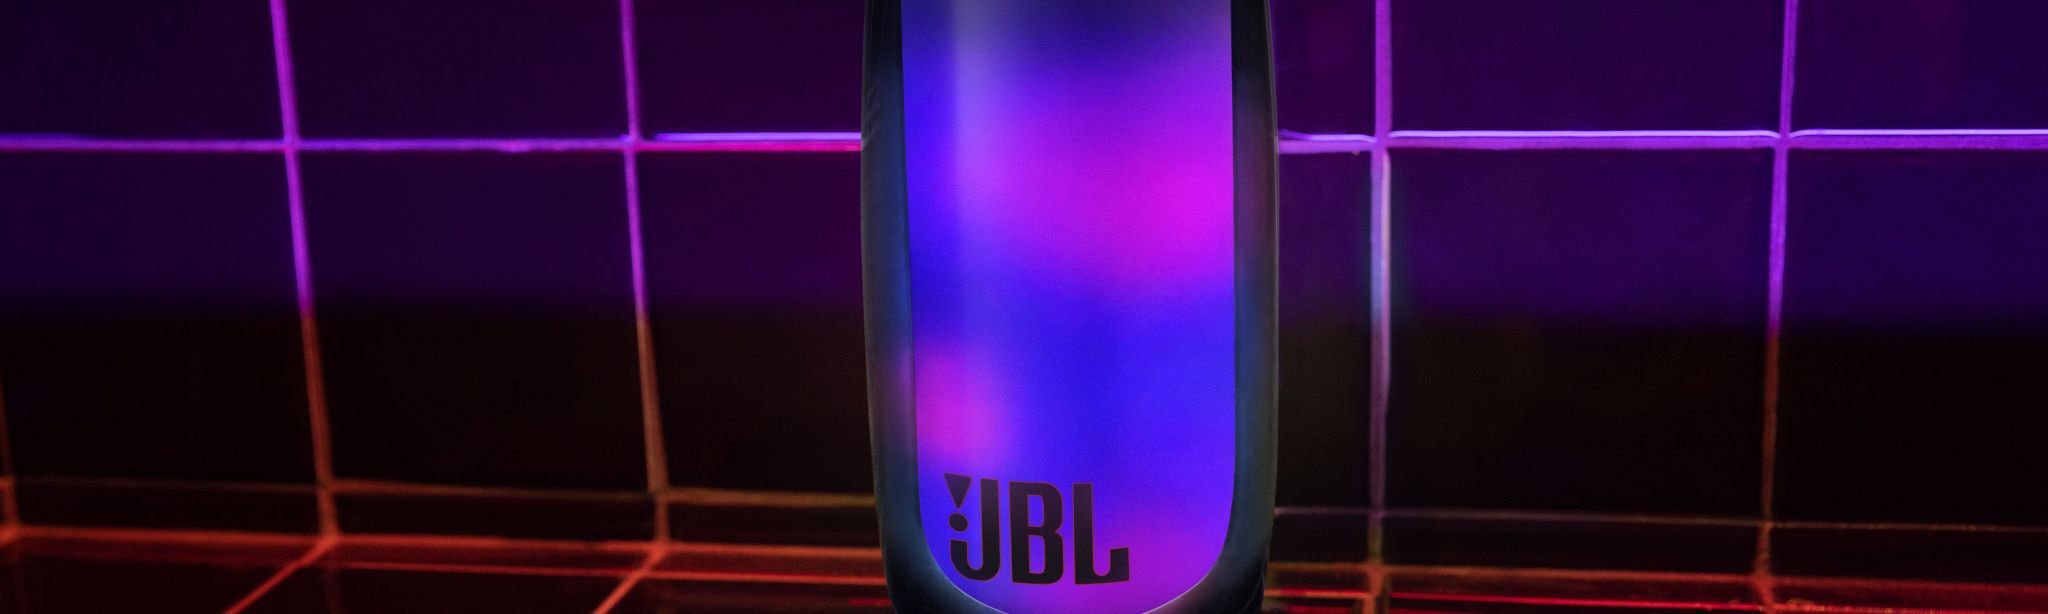 JBL acaba de mejorar aún más su altavoz Bluetooth portátil más potente. La  silueta icónica del JBL Boombox 3 recibe una nueva y audaz…